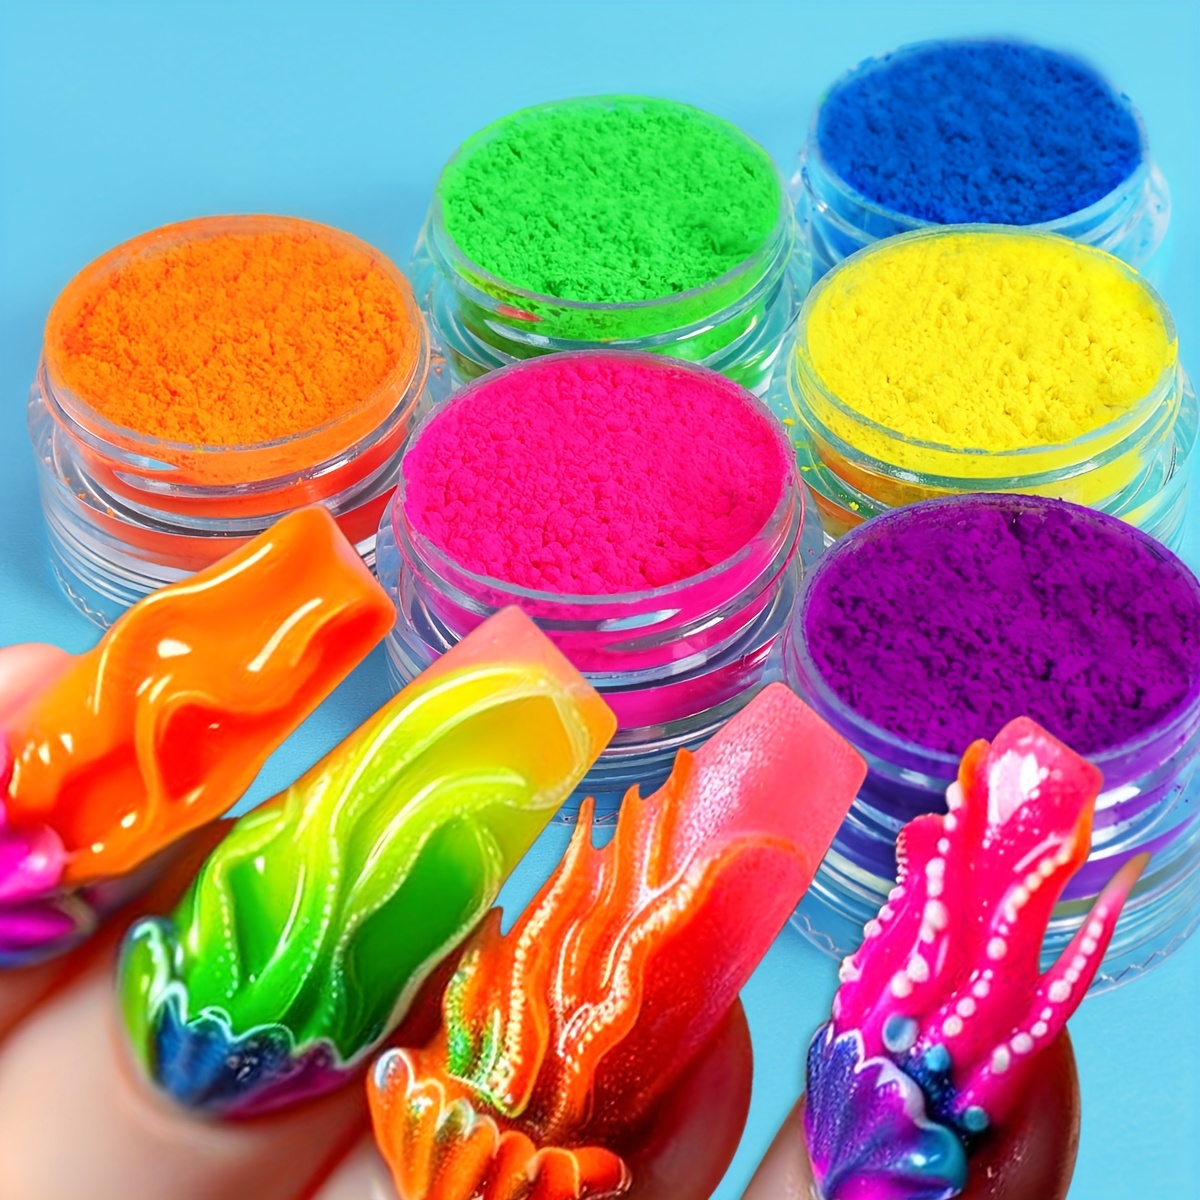 

6-color Neon Dip Powder Set For Nails, Fluorescent Chrome Nail Art Pigment, Multicolor Gradient Design, Unscented, Diy Manicure Decorations